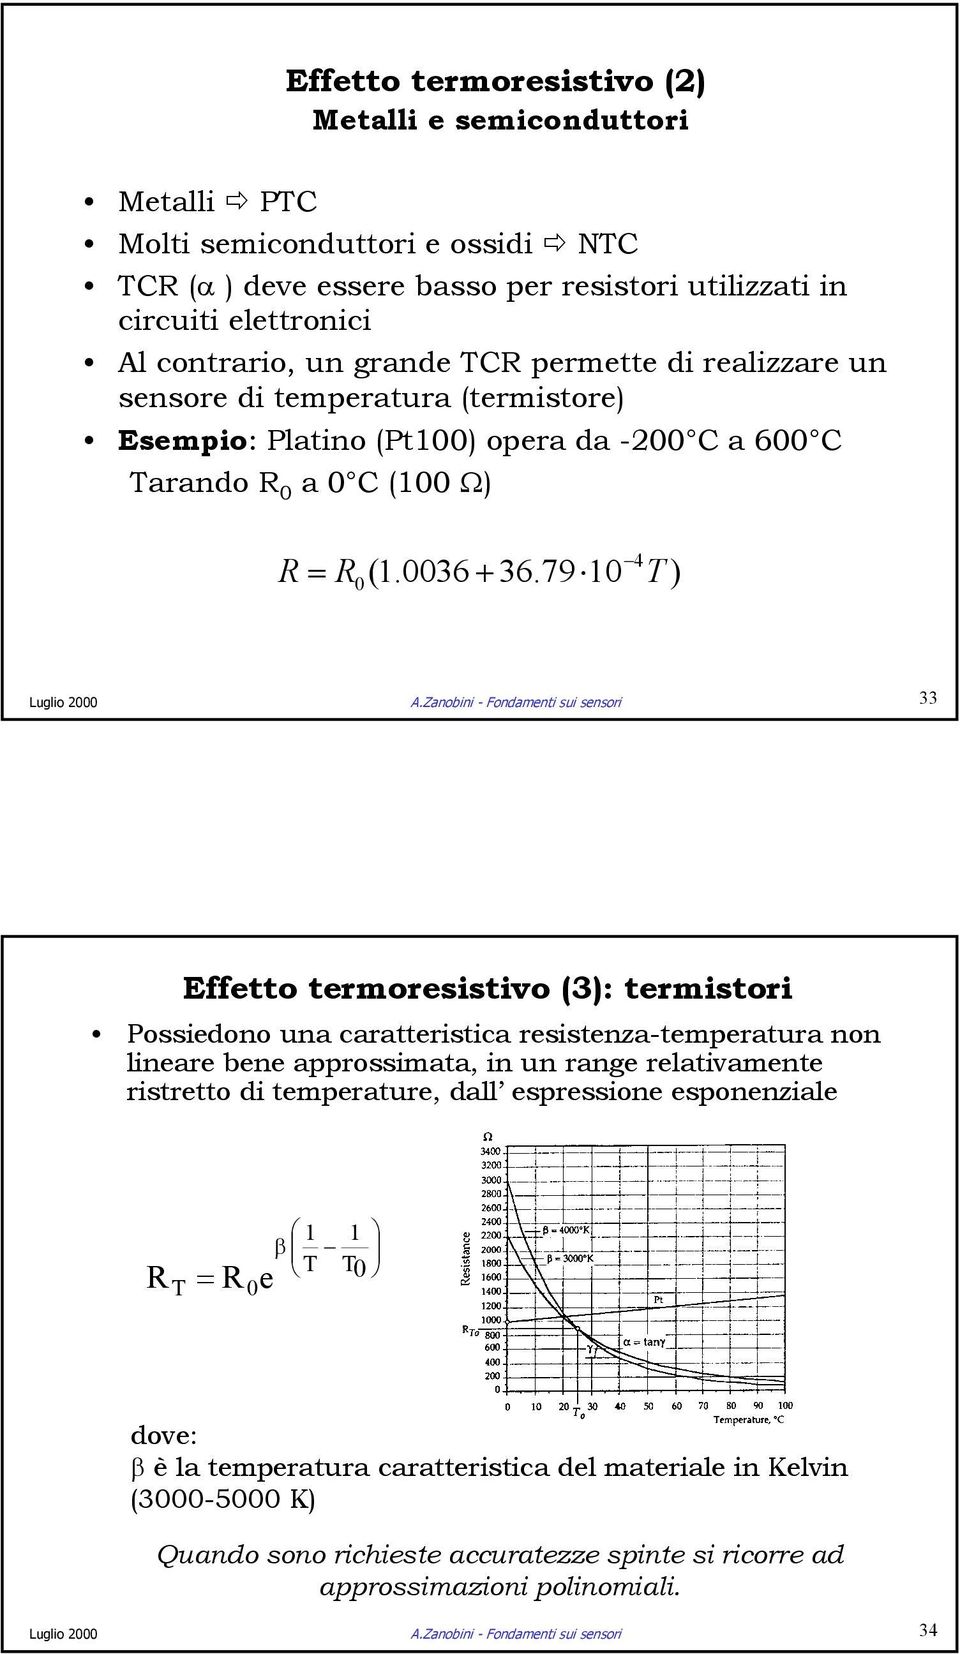 Zanobini - Fondamenti sui sensori 33 Effetto termoresistivo (3): termistori Possiedono una caratteristica resistenza-temperatura non lineare bene approssimata, in un range relativamente ristretto di